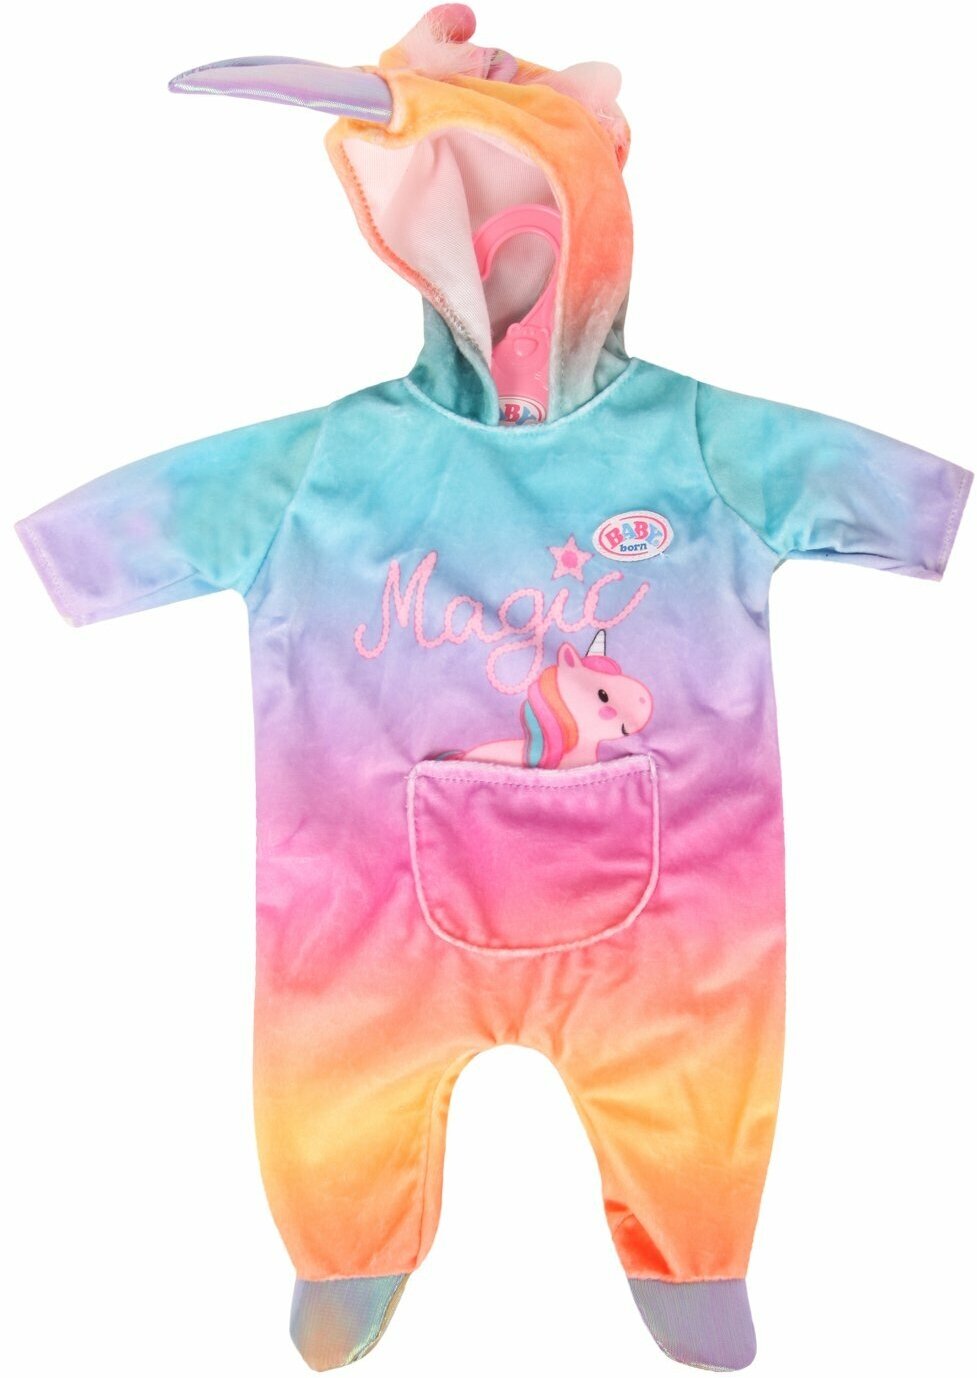 Одежда для кукол Беби Бон 828-205 костюм Единорог для пупса Беби Борн 43 см Baby Born Zapf Creation